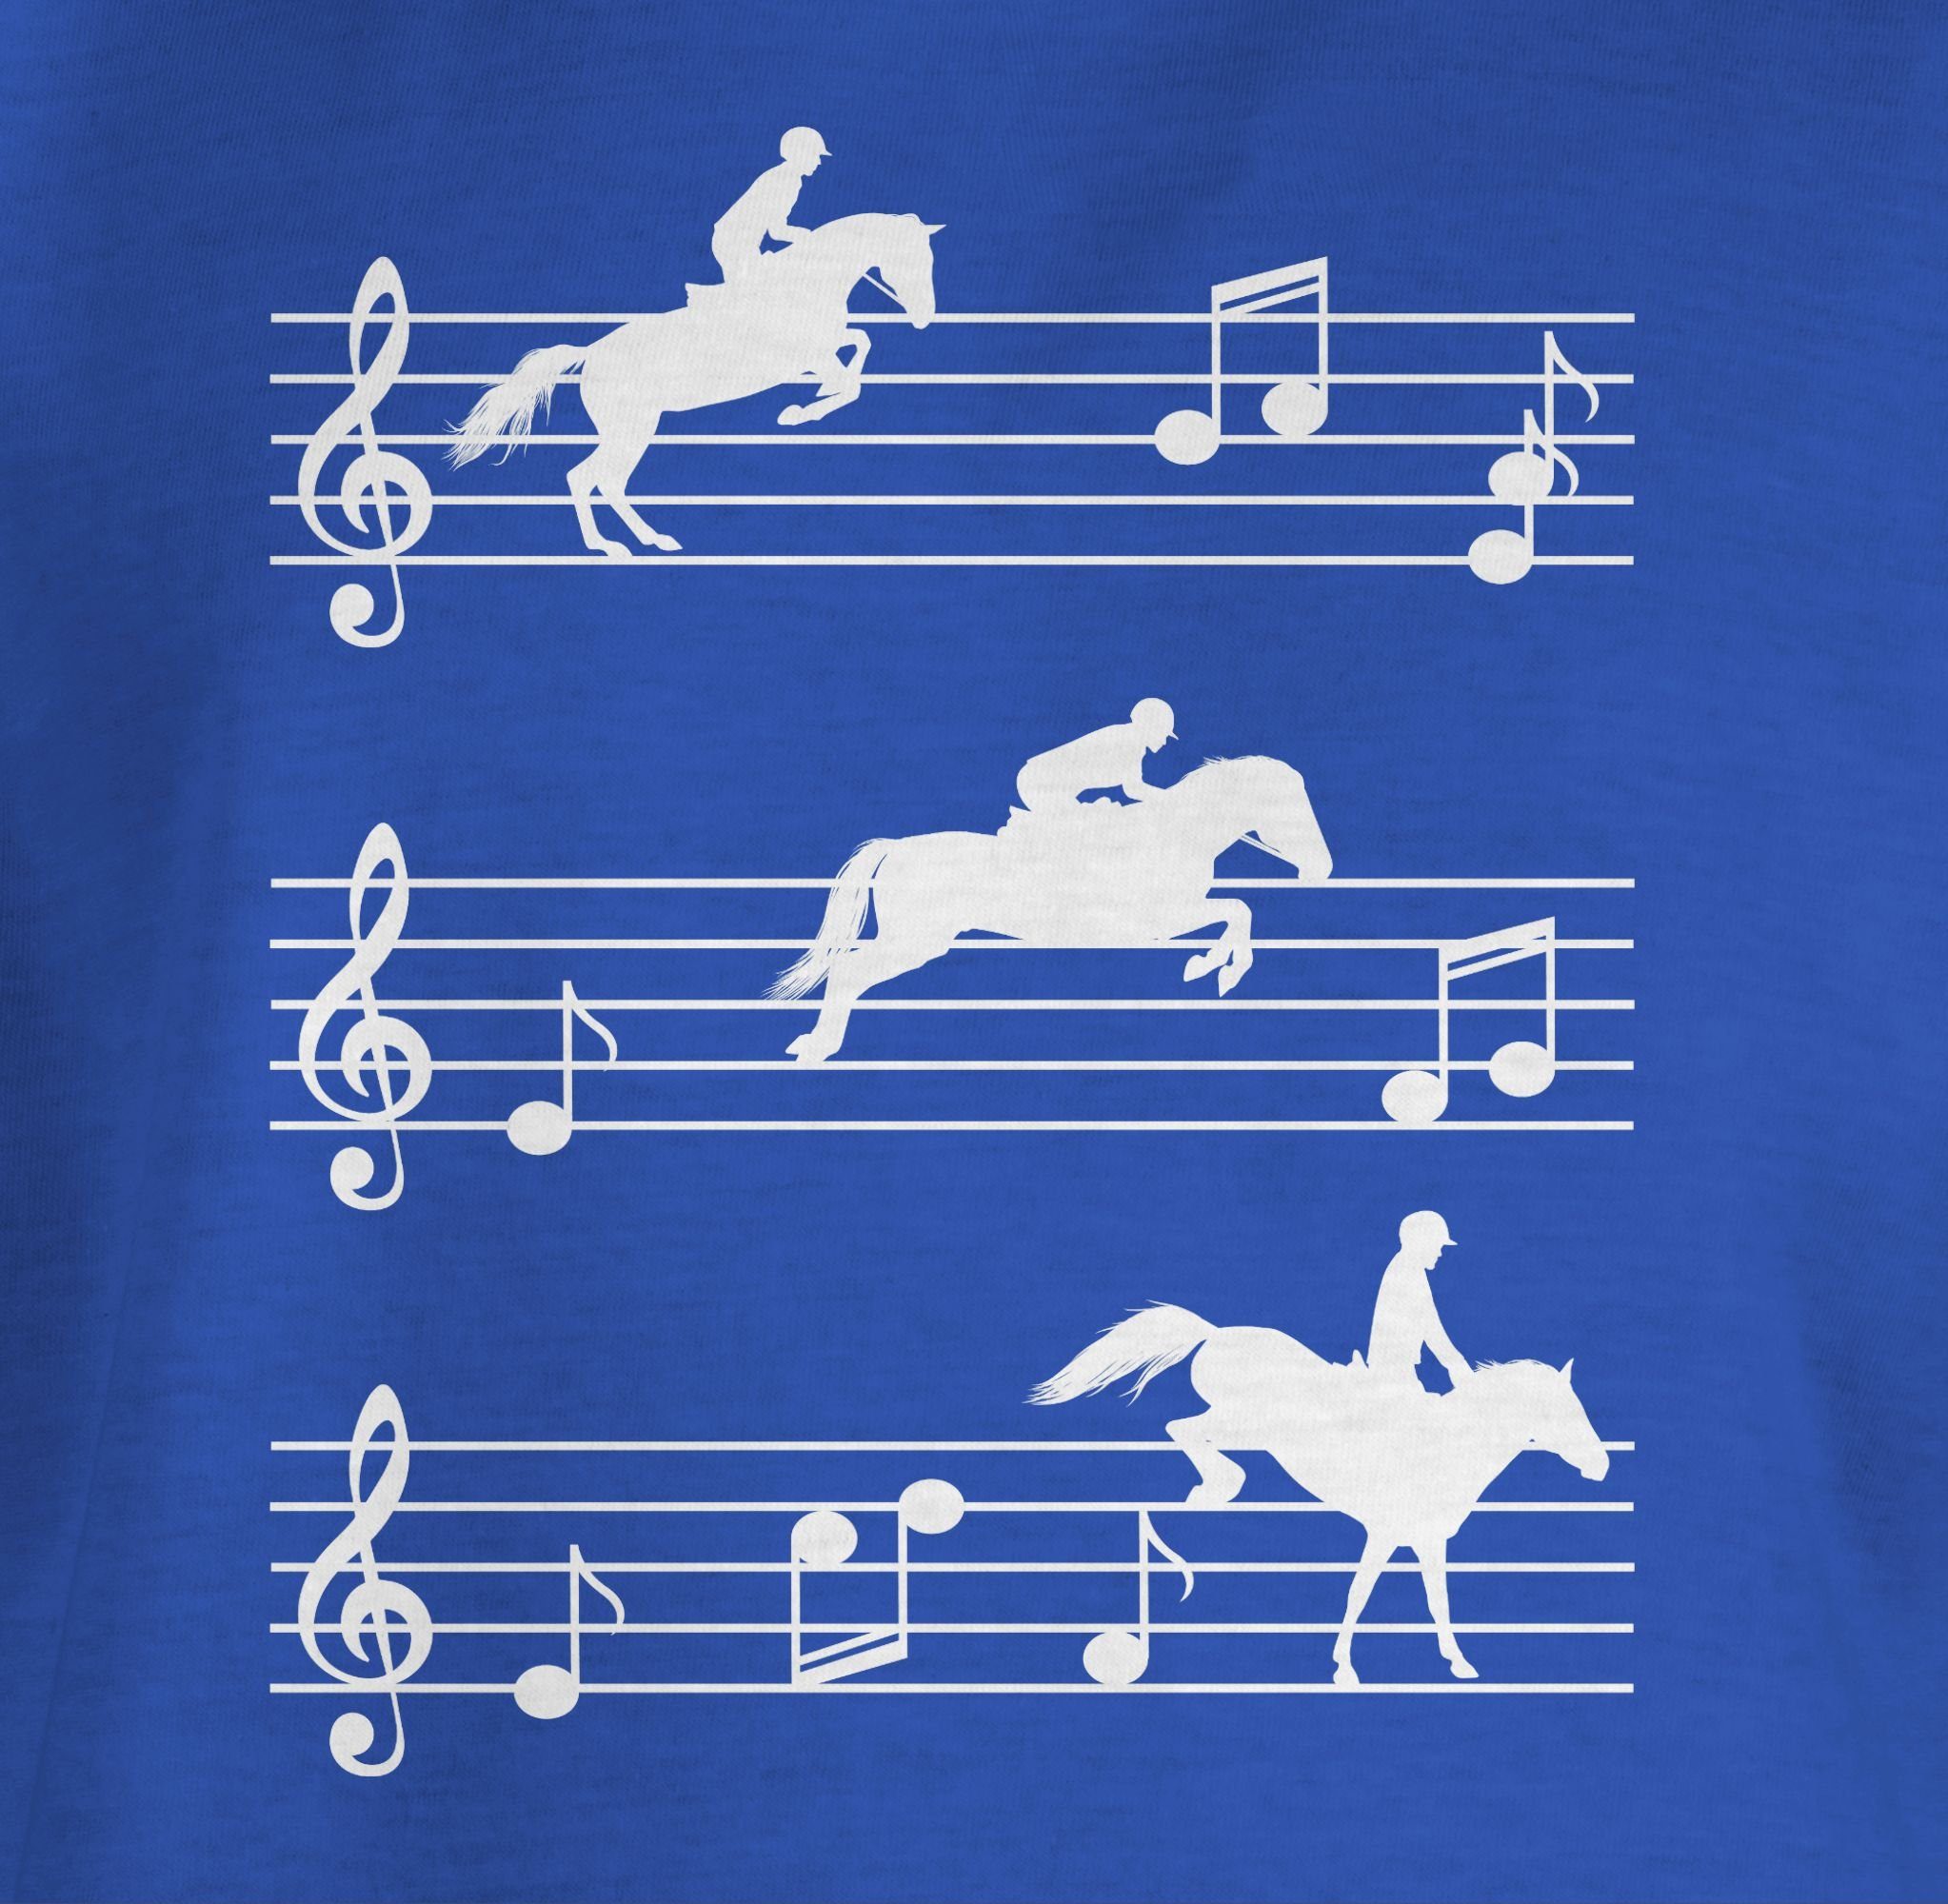 Shirtracer Pferde - 3 Pferd T-Shirt Musiknoten auf weiß Royalblau